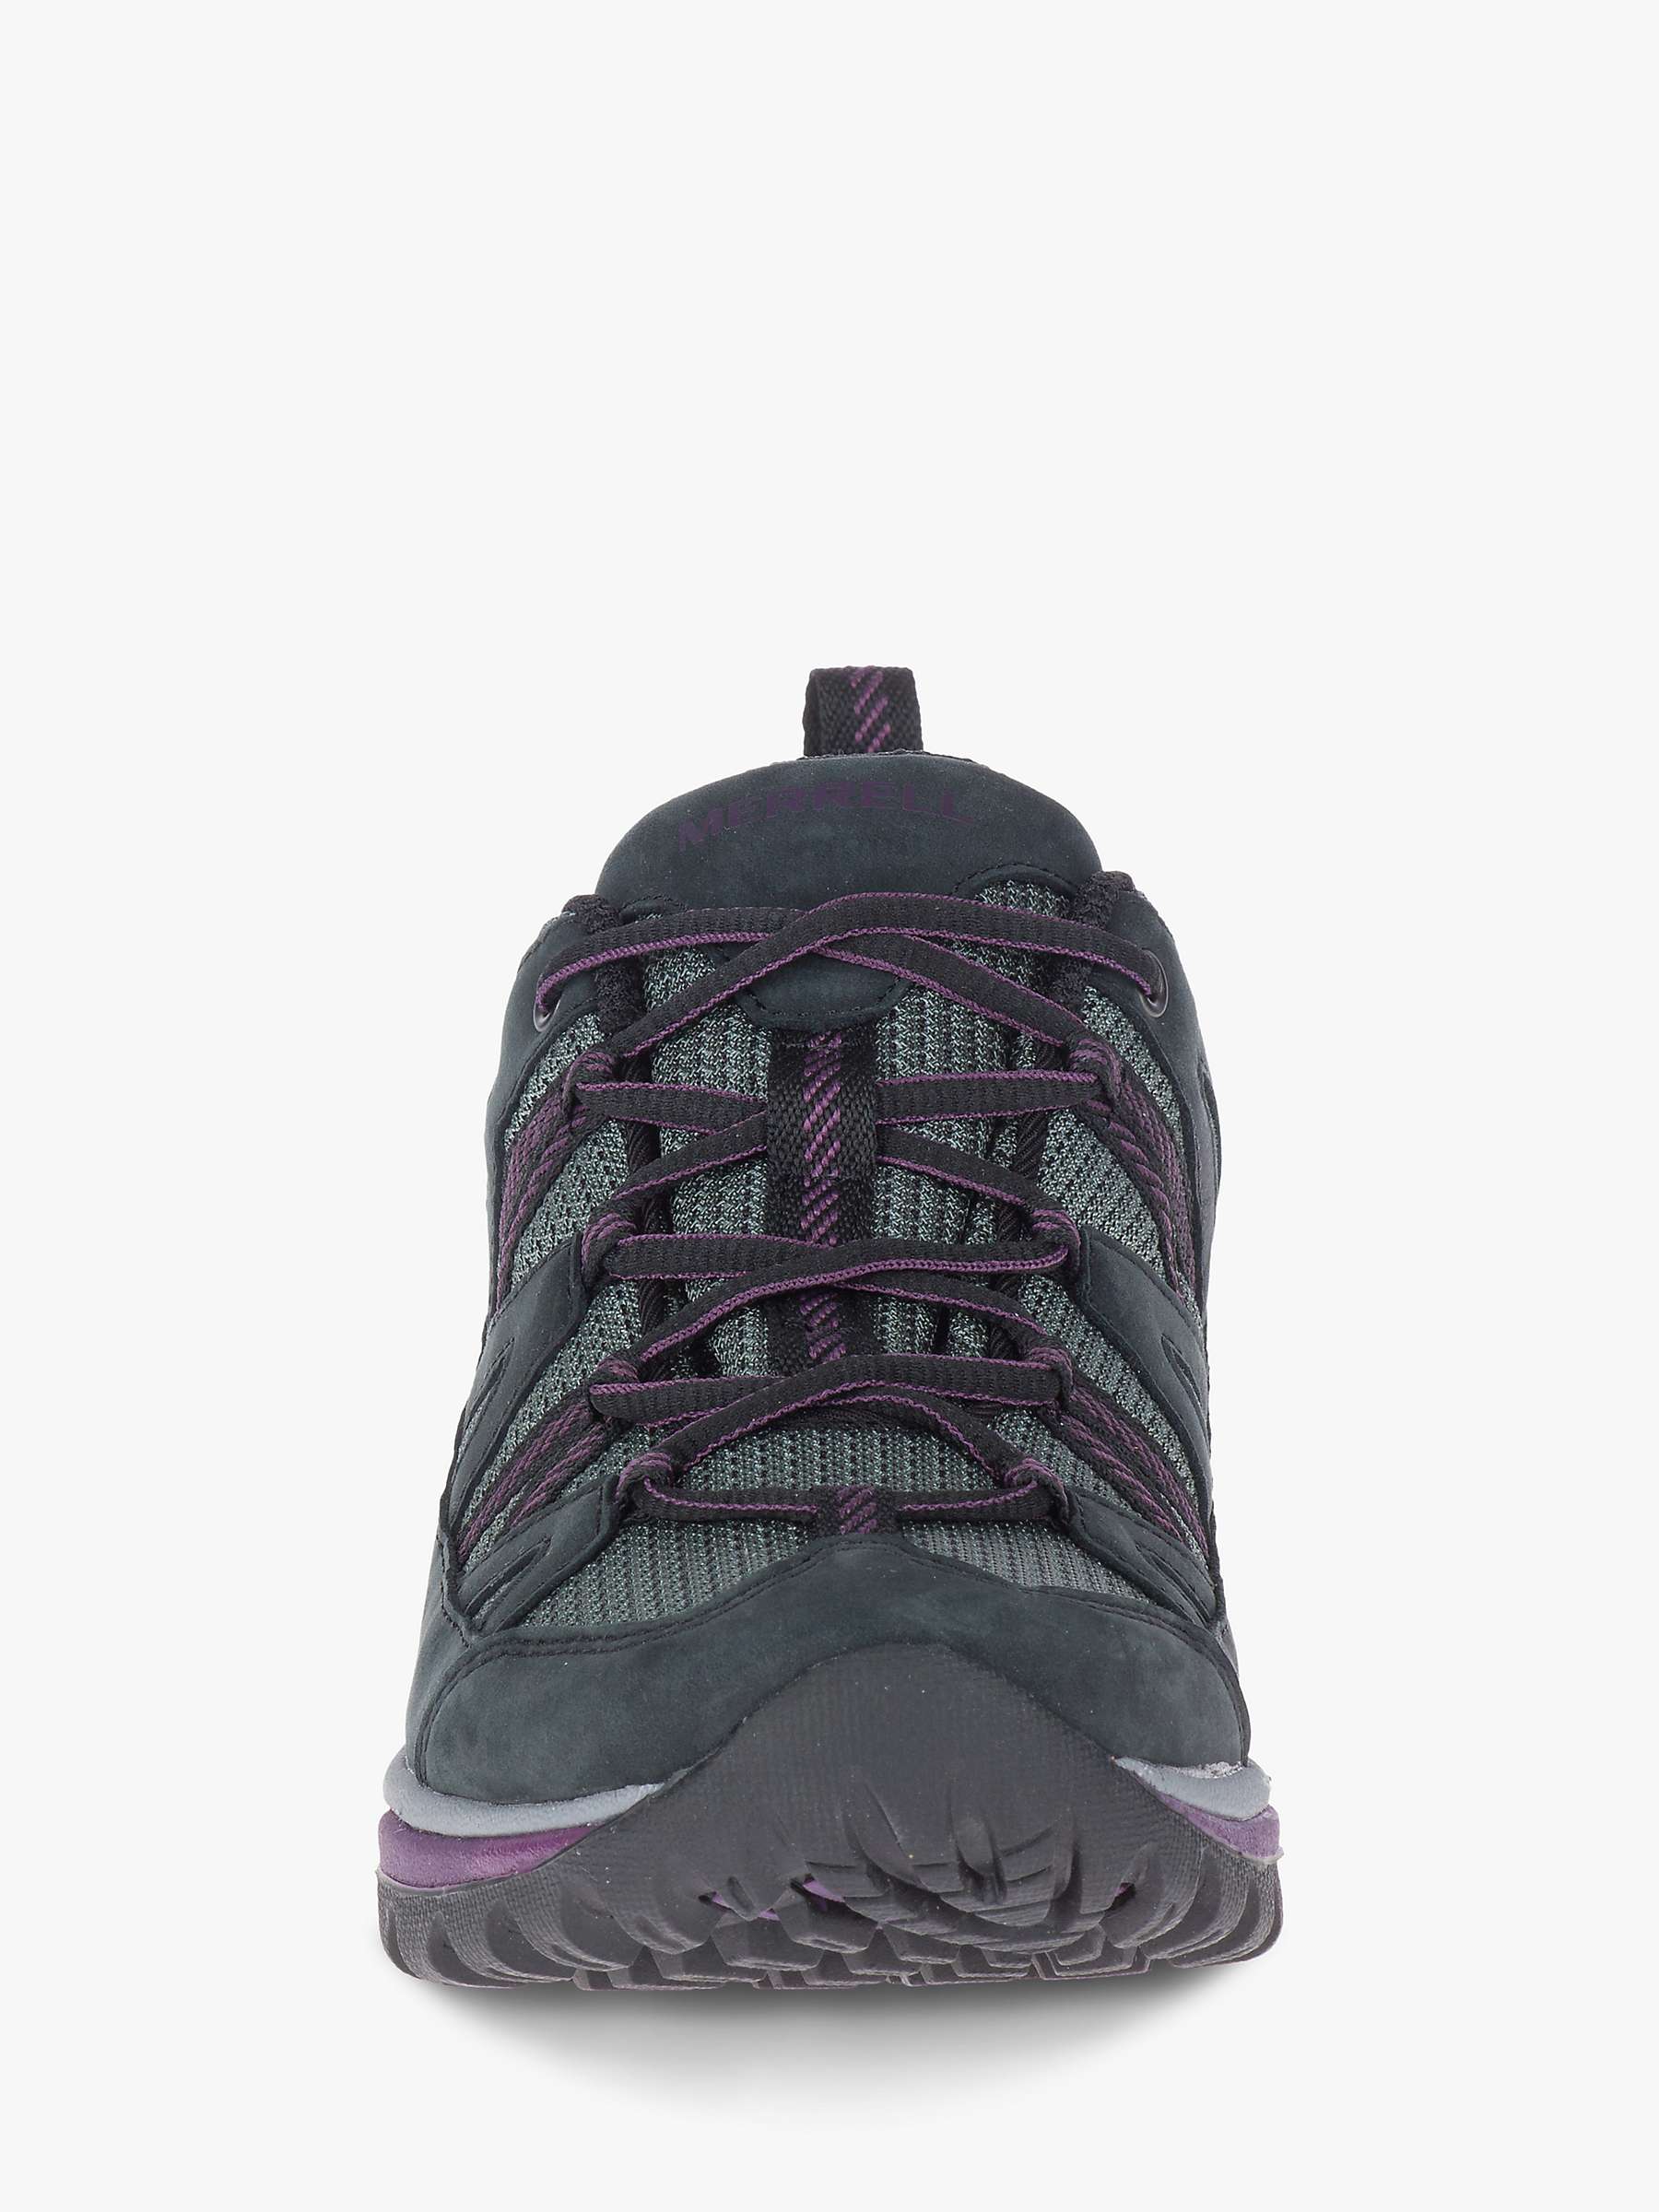 Buy Merrell Siren Sport Women's Waterproof Gore-Tex Walking Shoes, Black/Blackberry Online at johnlewis.com